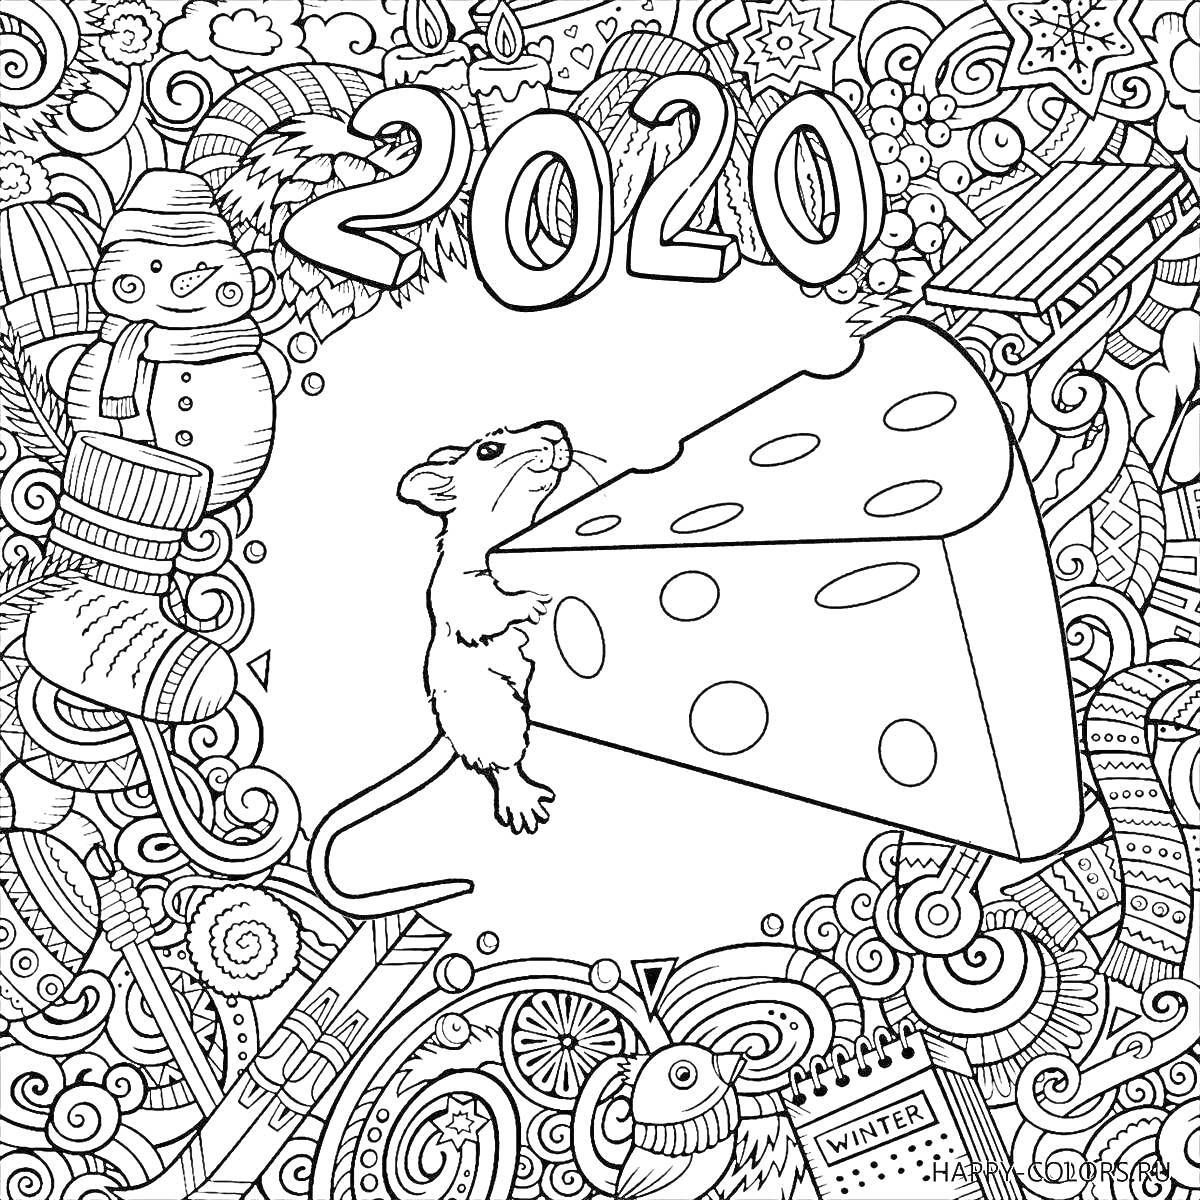 На раскраске изображено: 2020, Мышь, Сыр, Новогодние украшения, Подарки, Елочные игрушки, Зима, Календарь, Чулки, Снежинки, Снеговики